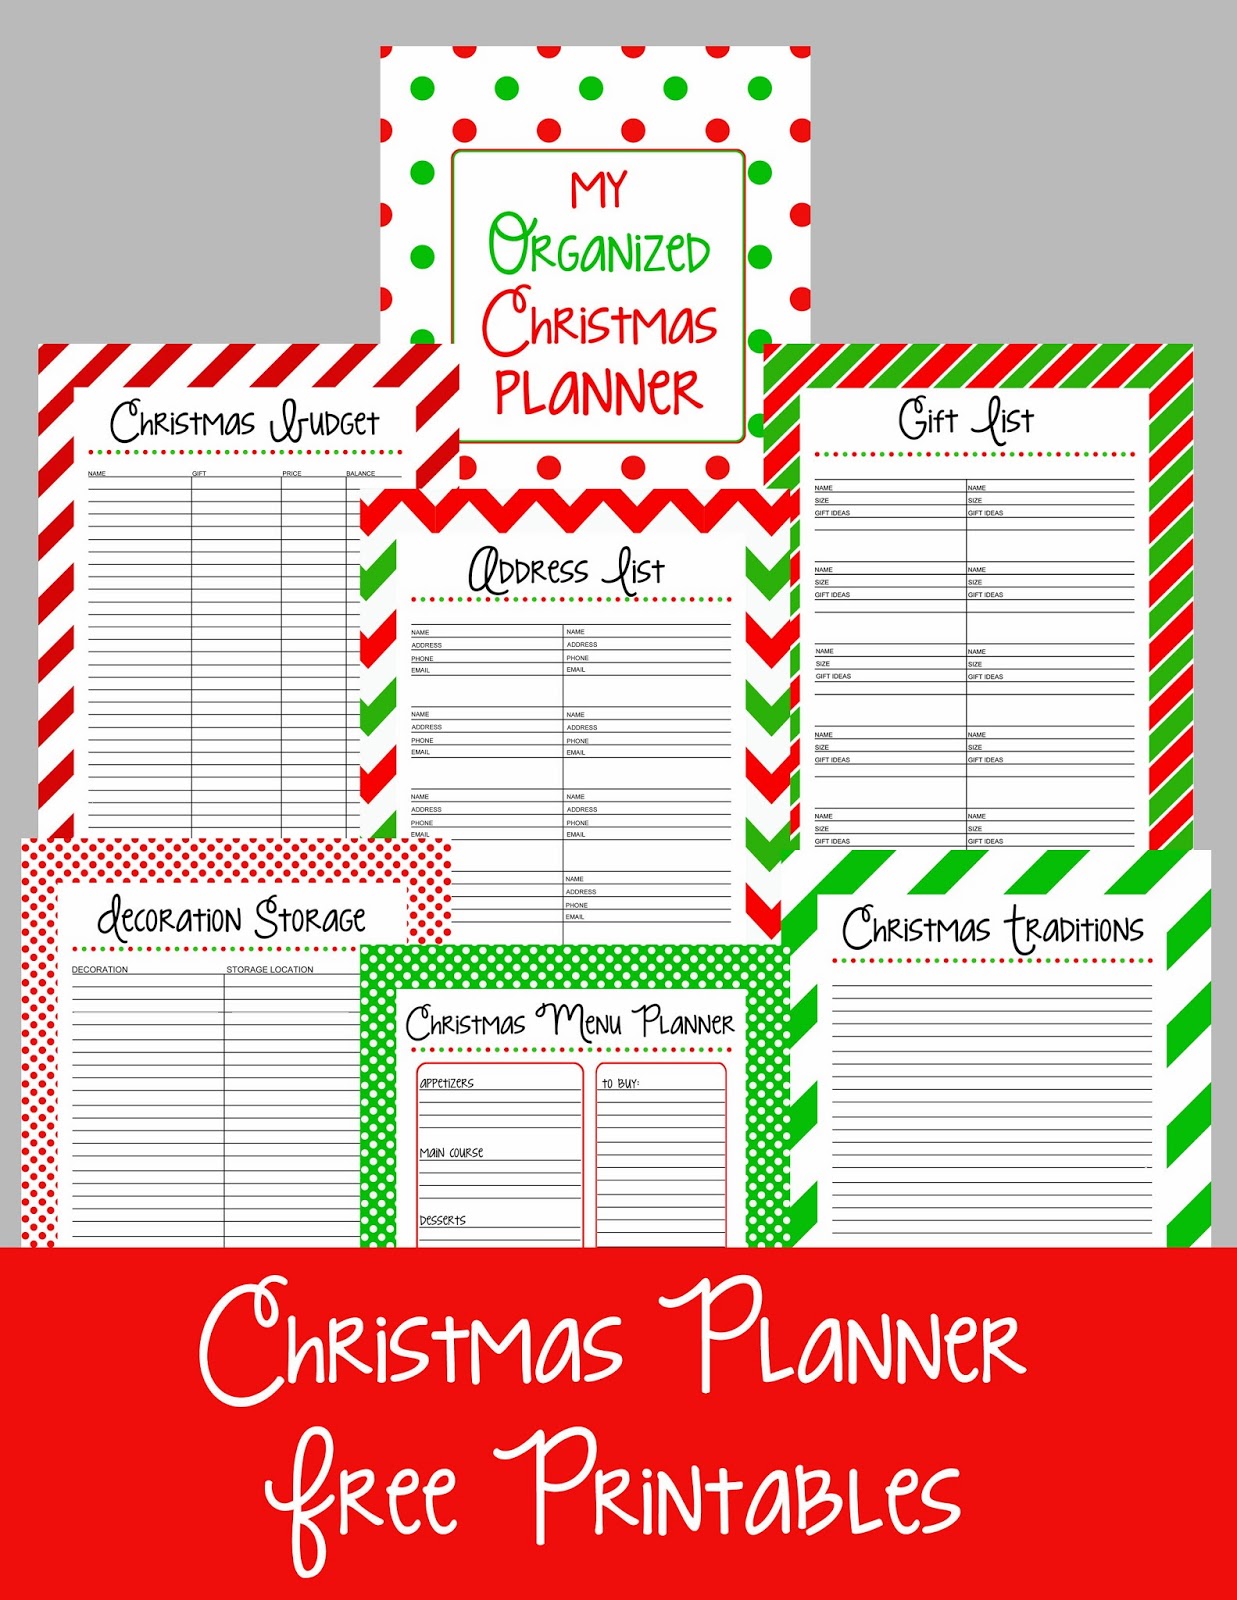 Christmas Planner Free Printable